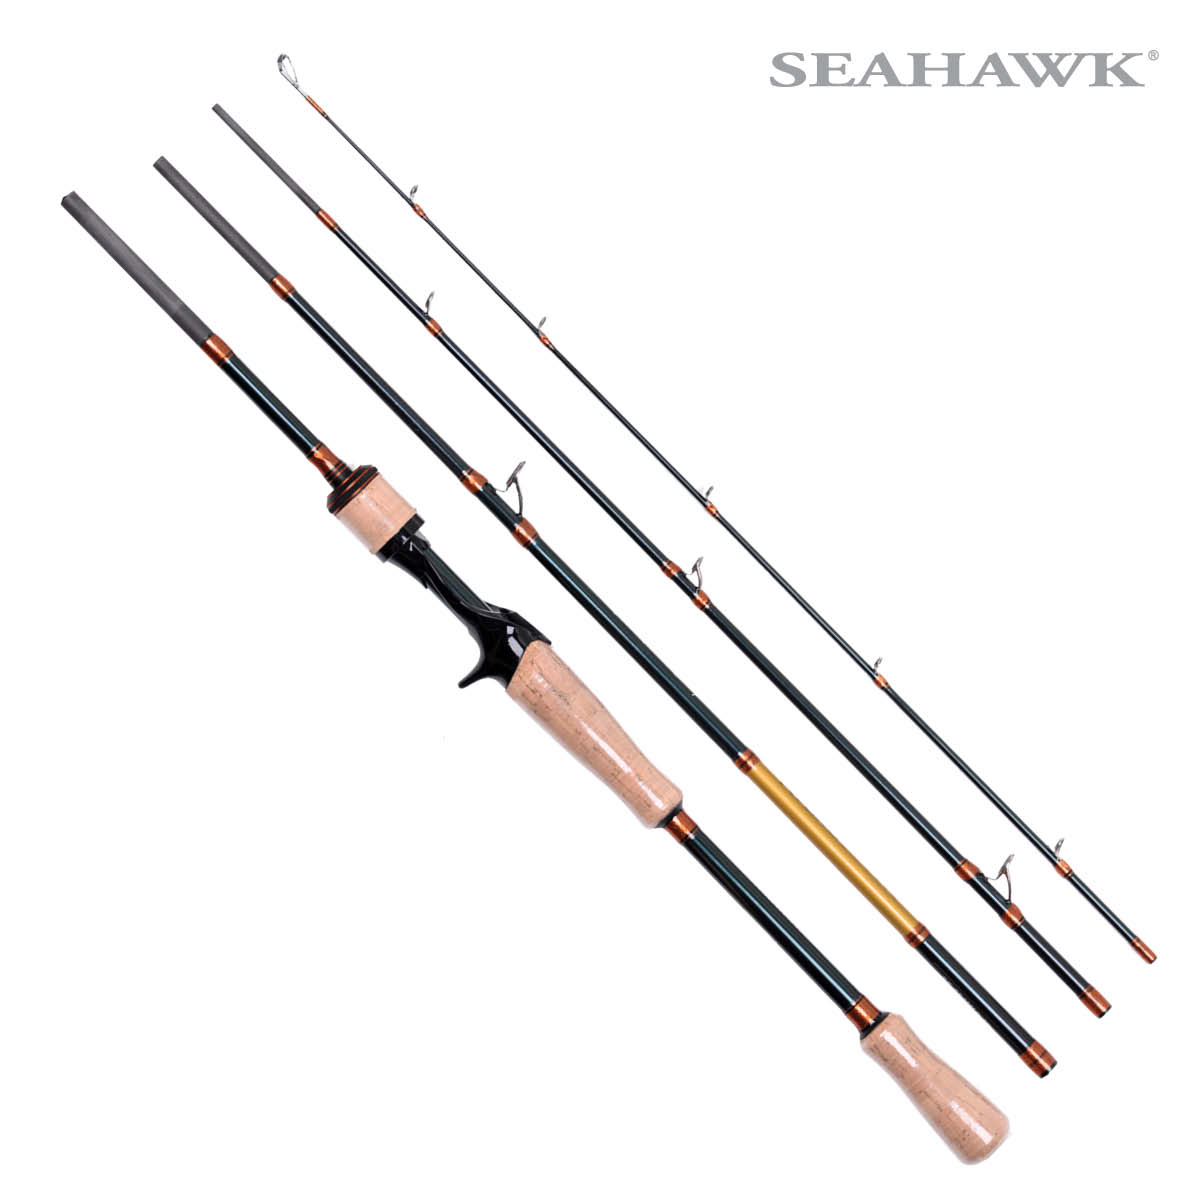 Seahawk Fishing Malaysia